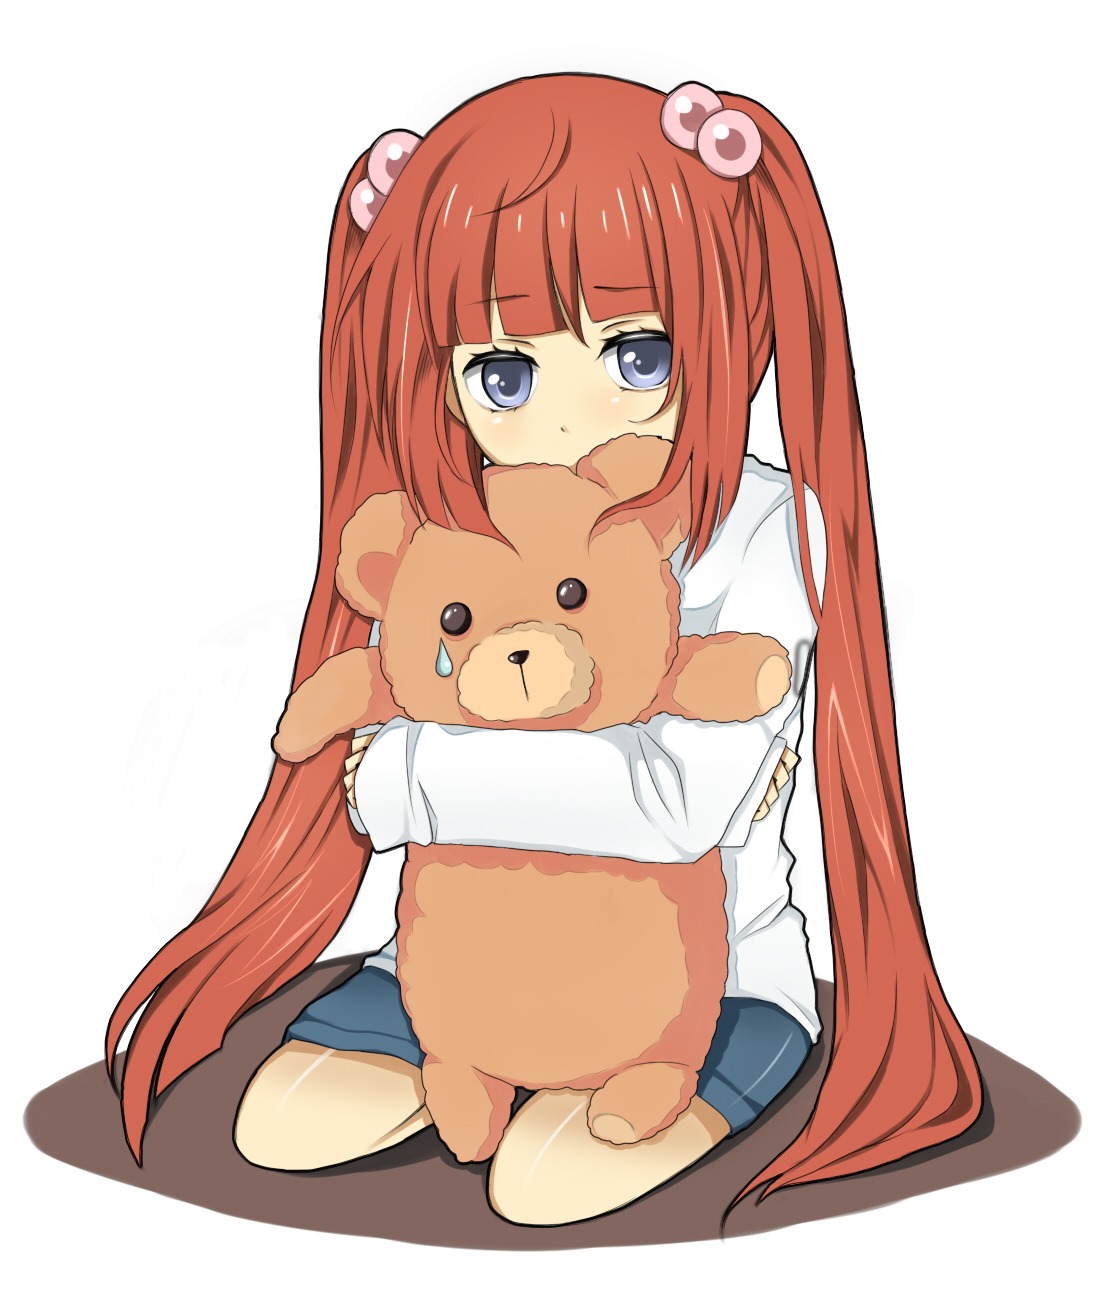 Аниме младенец девочка с рыжими волосами